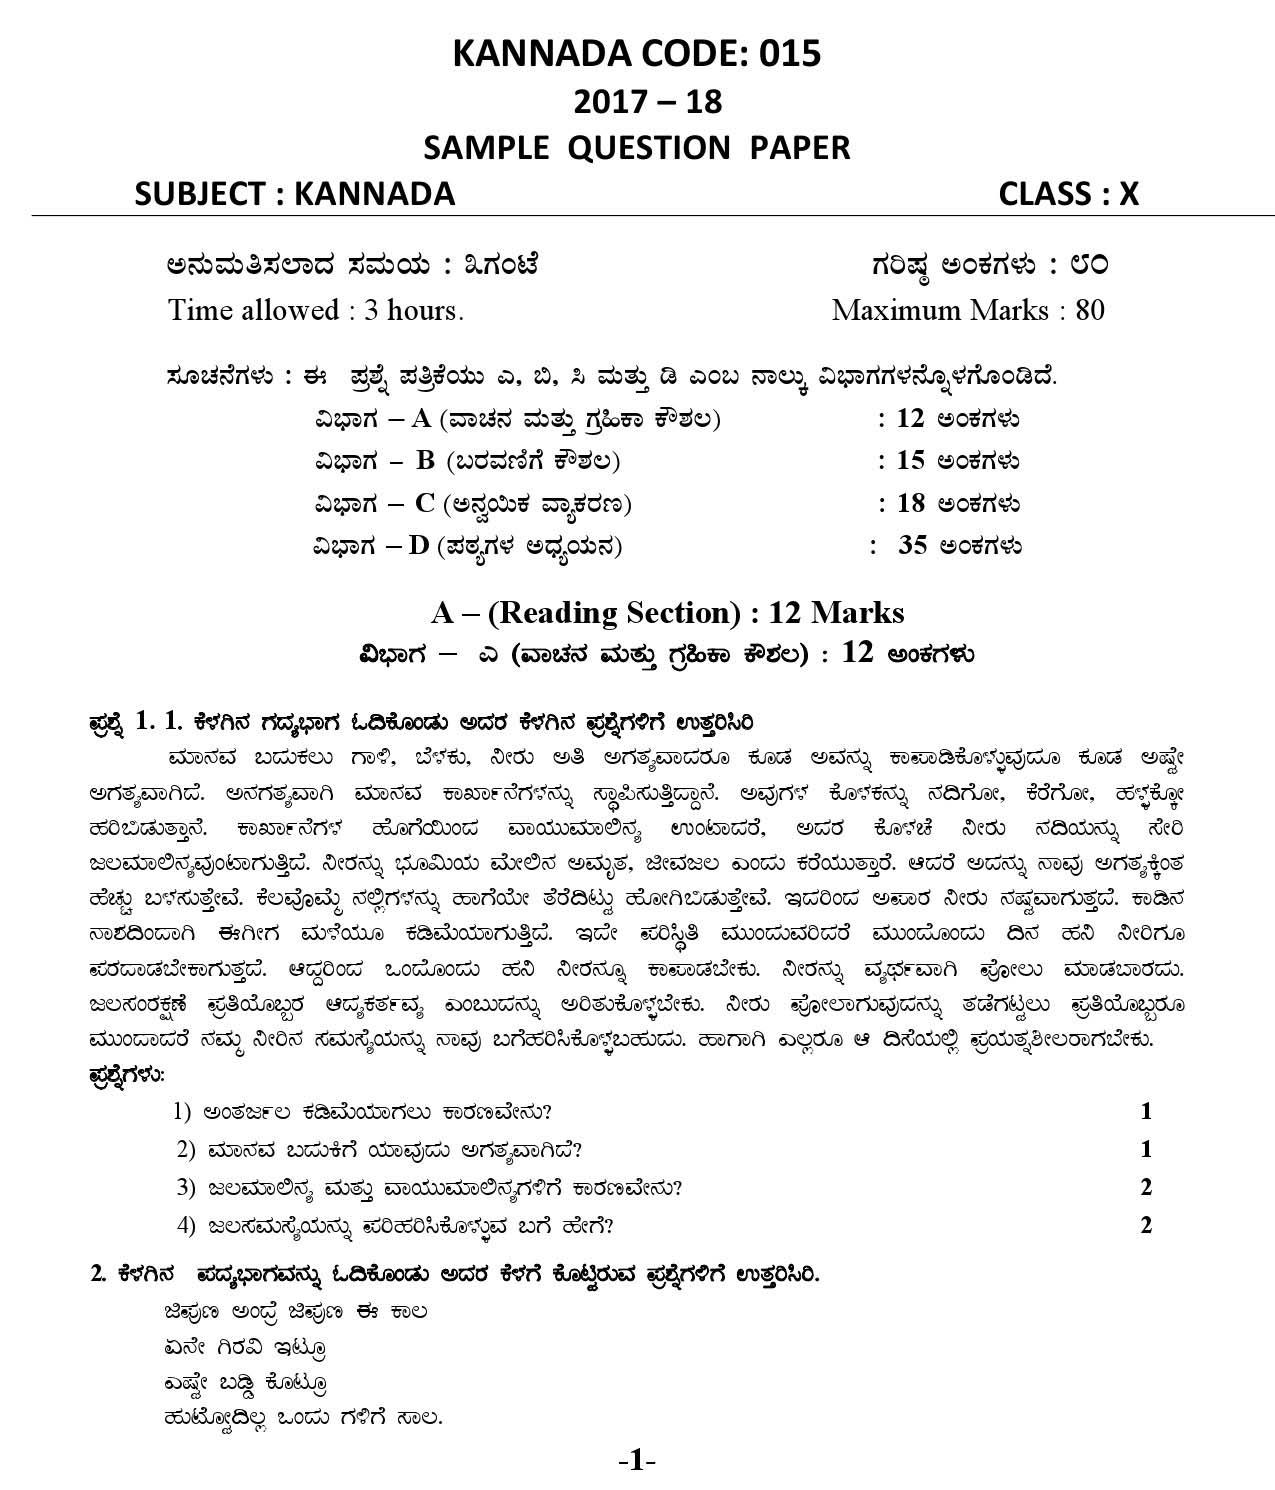 Kannada CBSE Class X Sample Question Paper 2017 18 - Image 4